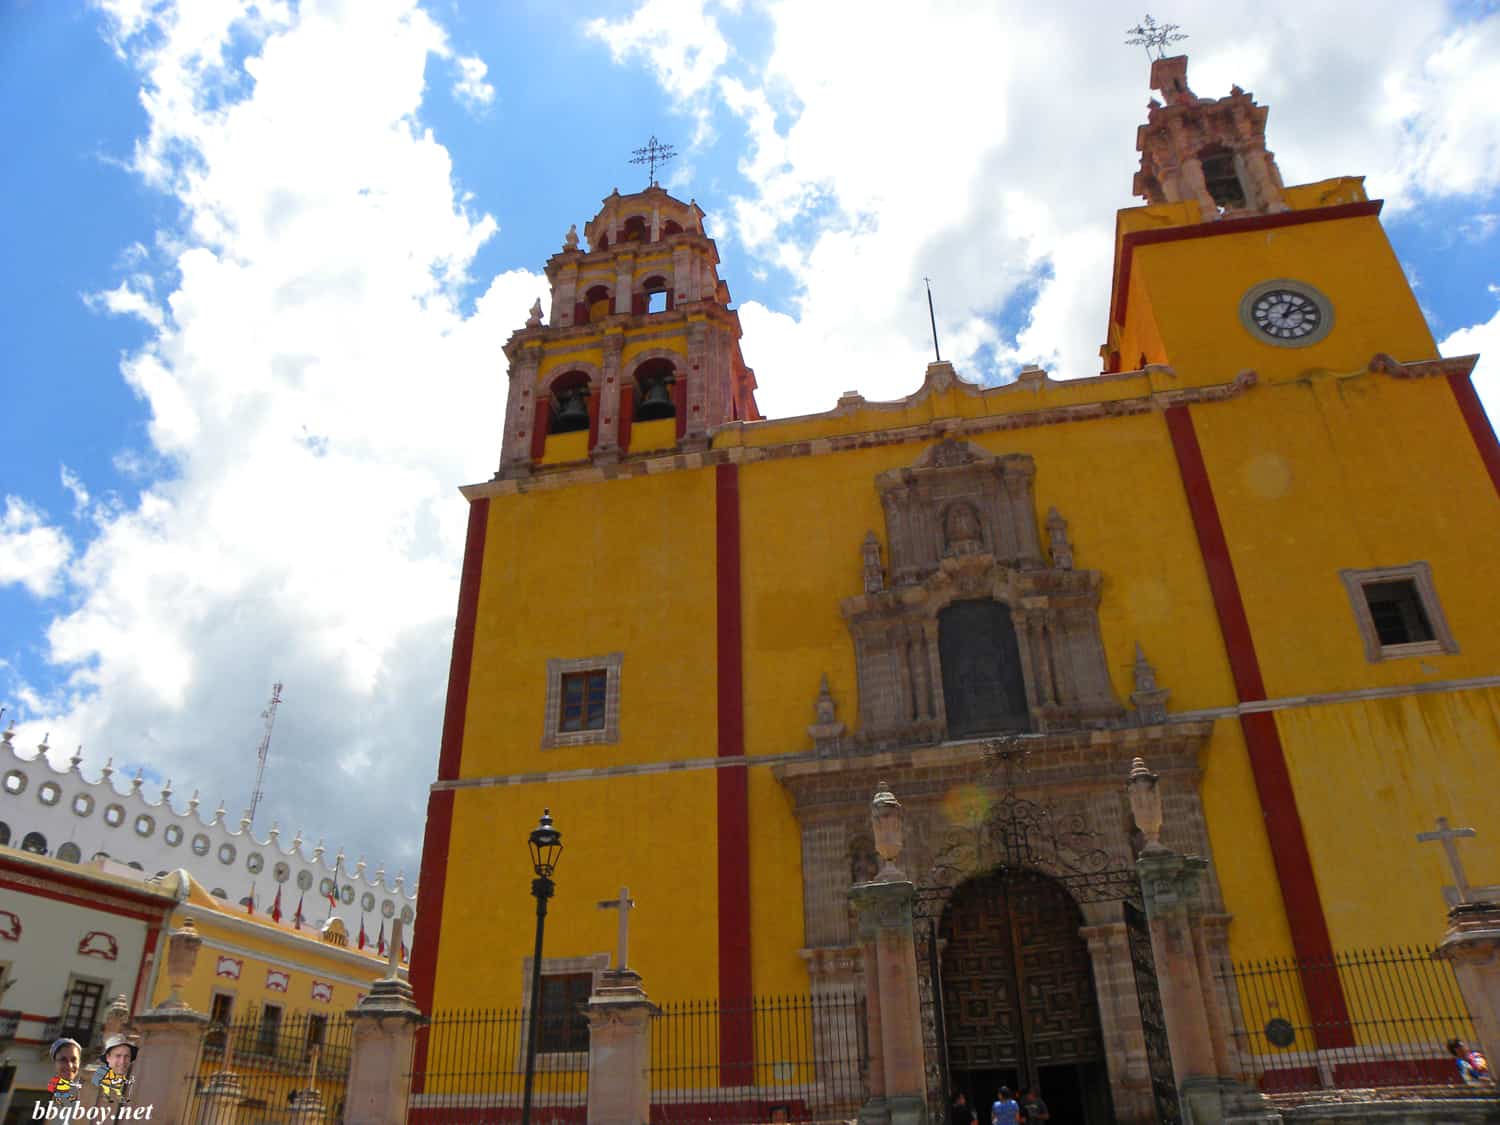 Parroquia-de-Basílica-Colegiata-de-Nuestra-Señora-de-Guanajuato-in-colorful-Guanajuato-Mexico